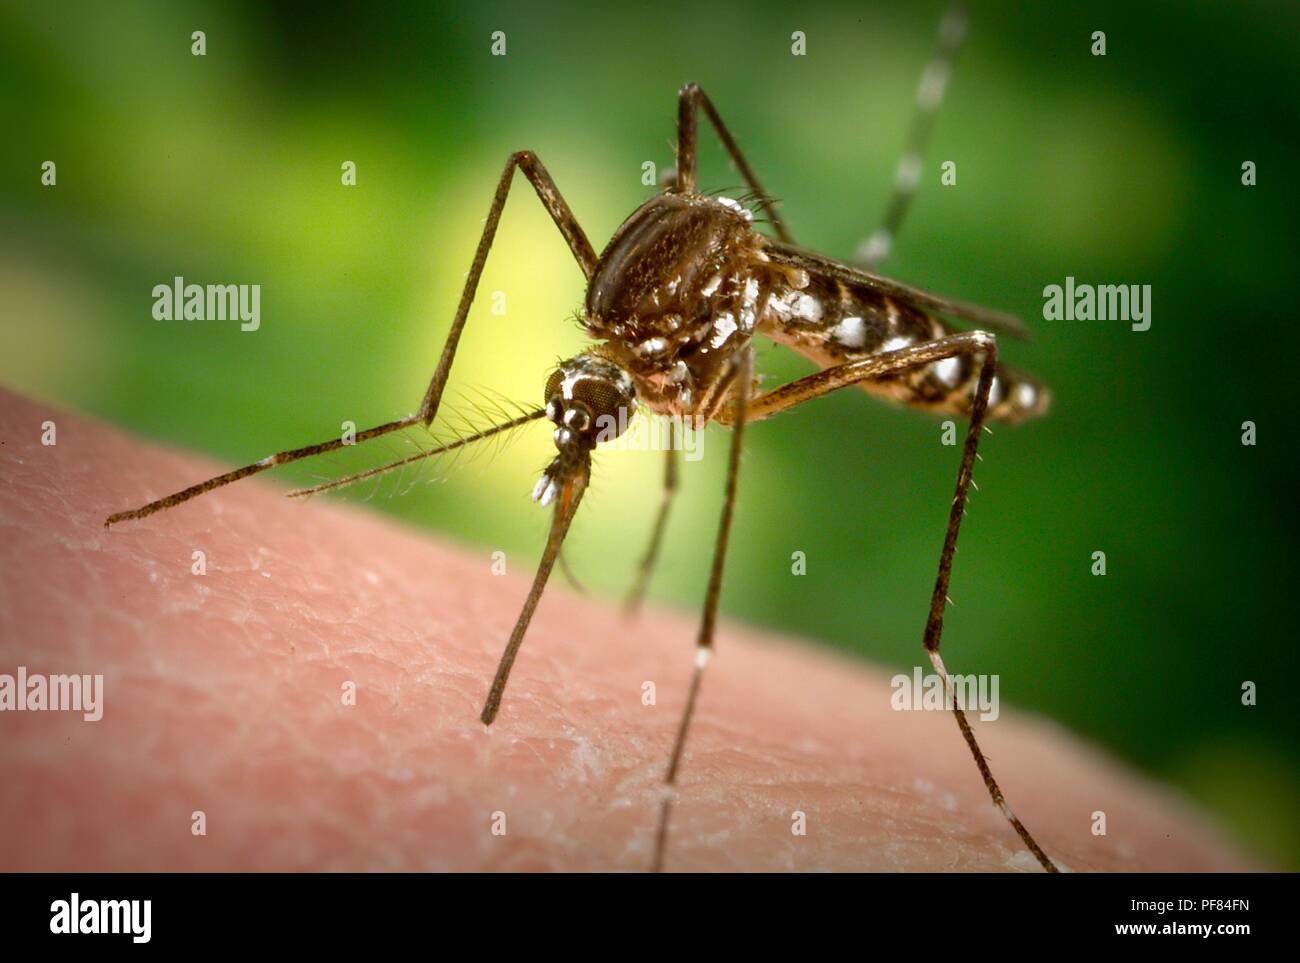 Femmine Aedes aegypti mosquito nel processo inserendo il suo fascicolo attraverso la superficie della pelle dell'ospite umano, 2006. Immagine cortesia di centri per il controllo delle malattie (CDC) / James Gathany. () Foto Stock